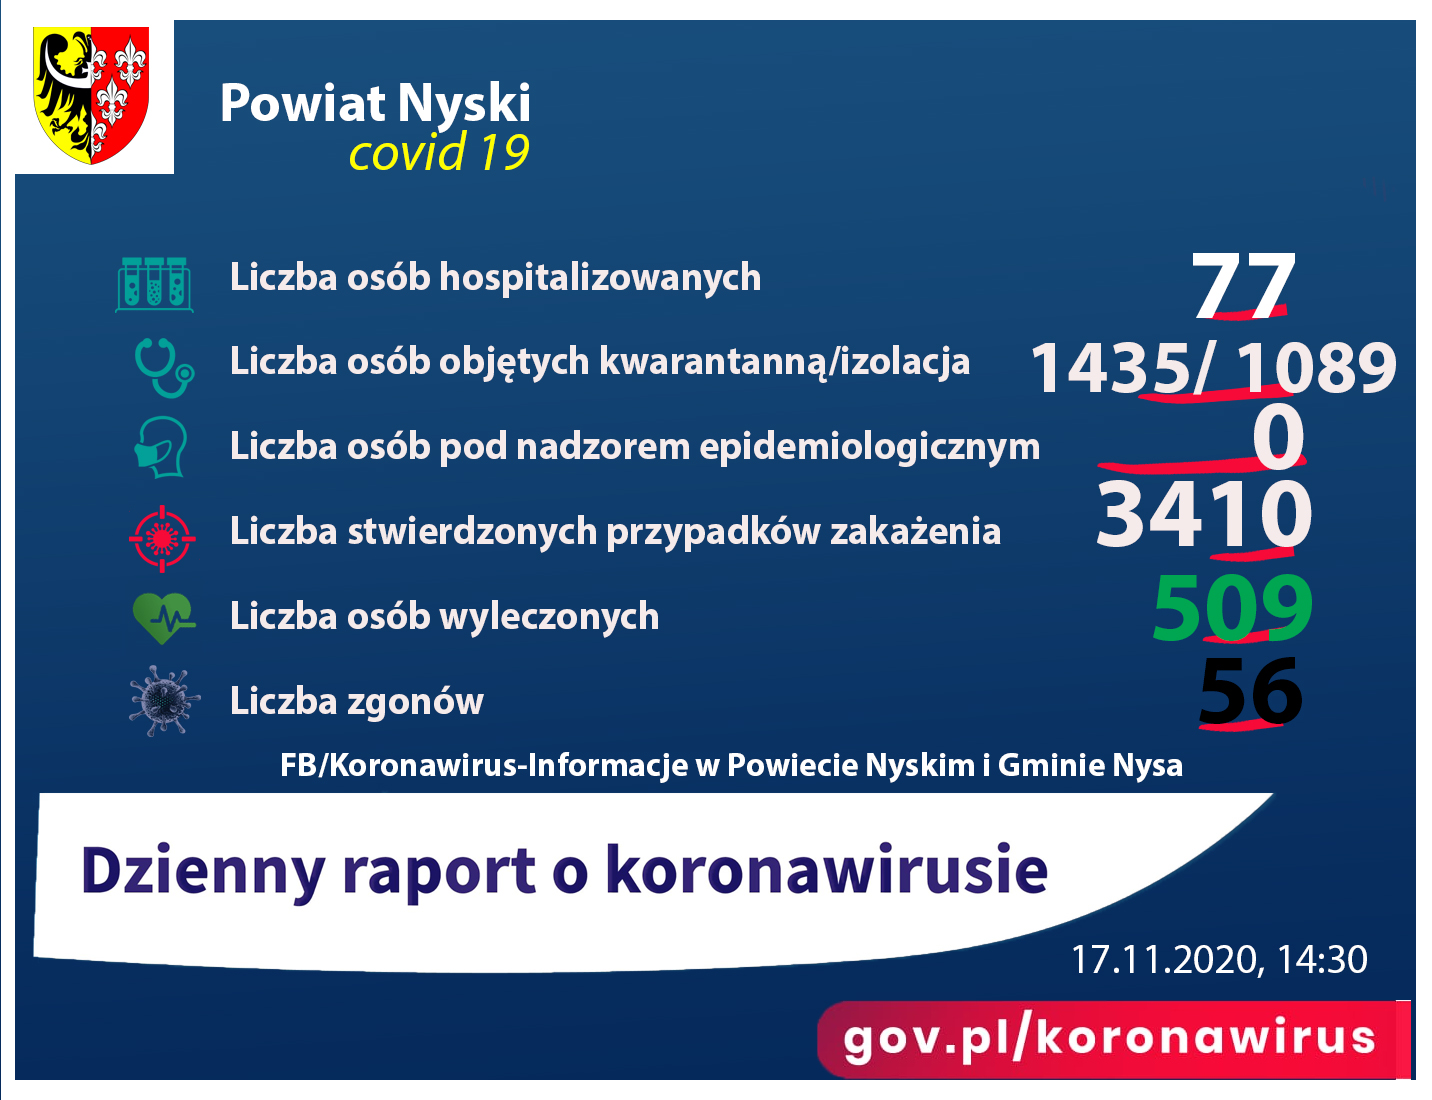 Liczba osób zakażonych 3410, hospitalizowanych - 77, ozdrowieńców - 509, zgonów 54